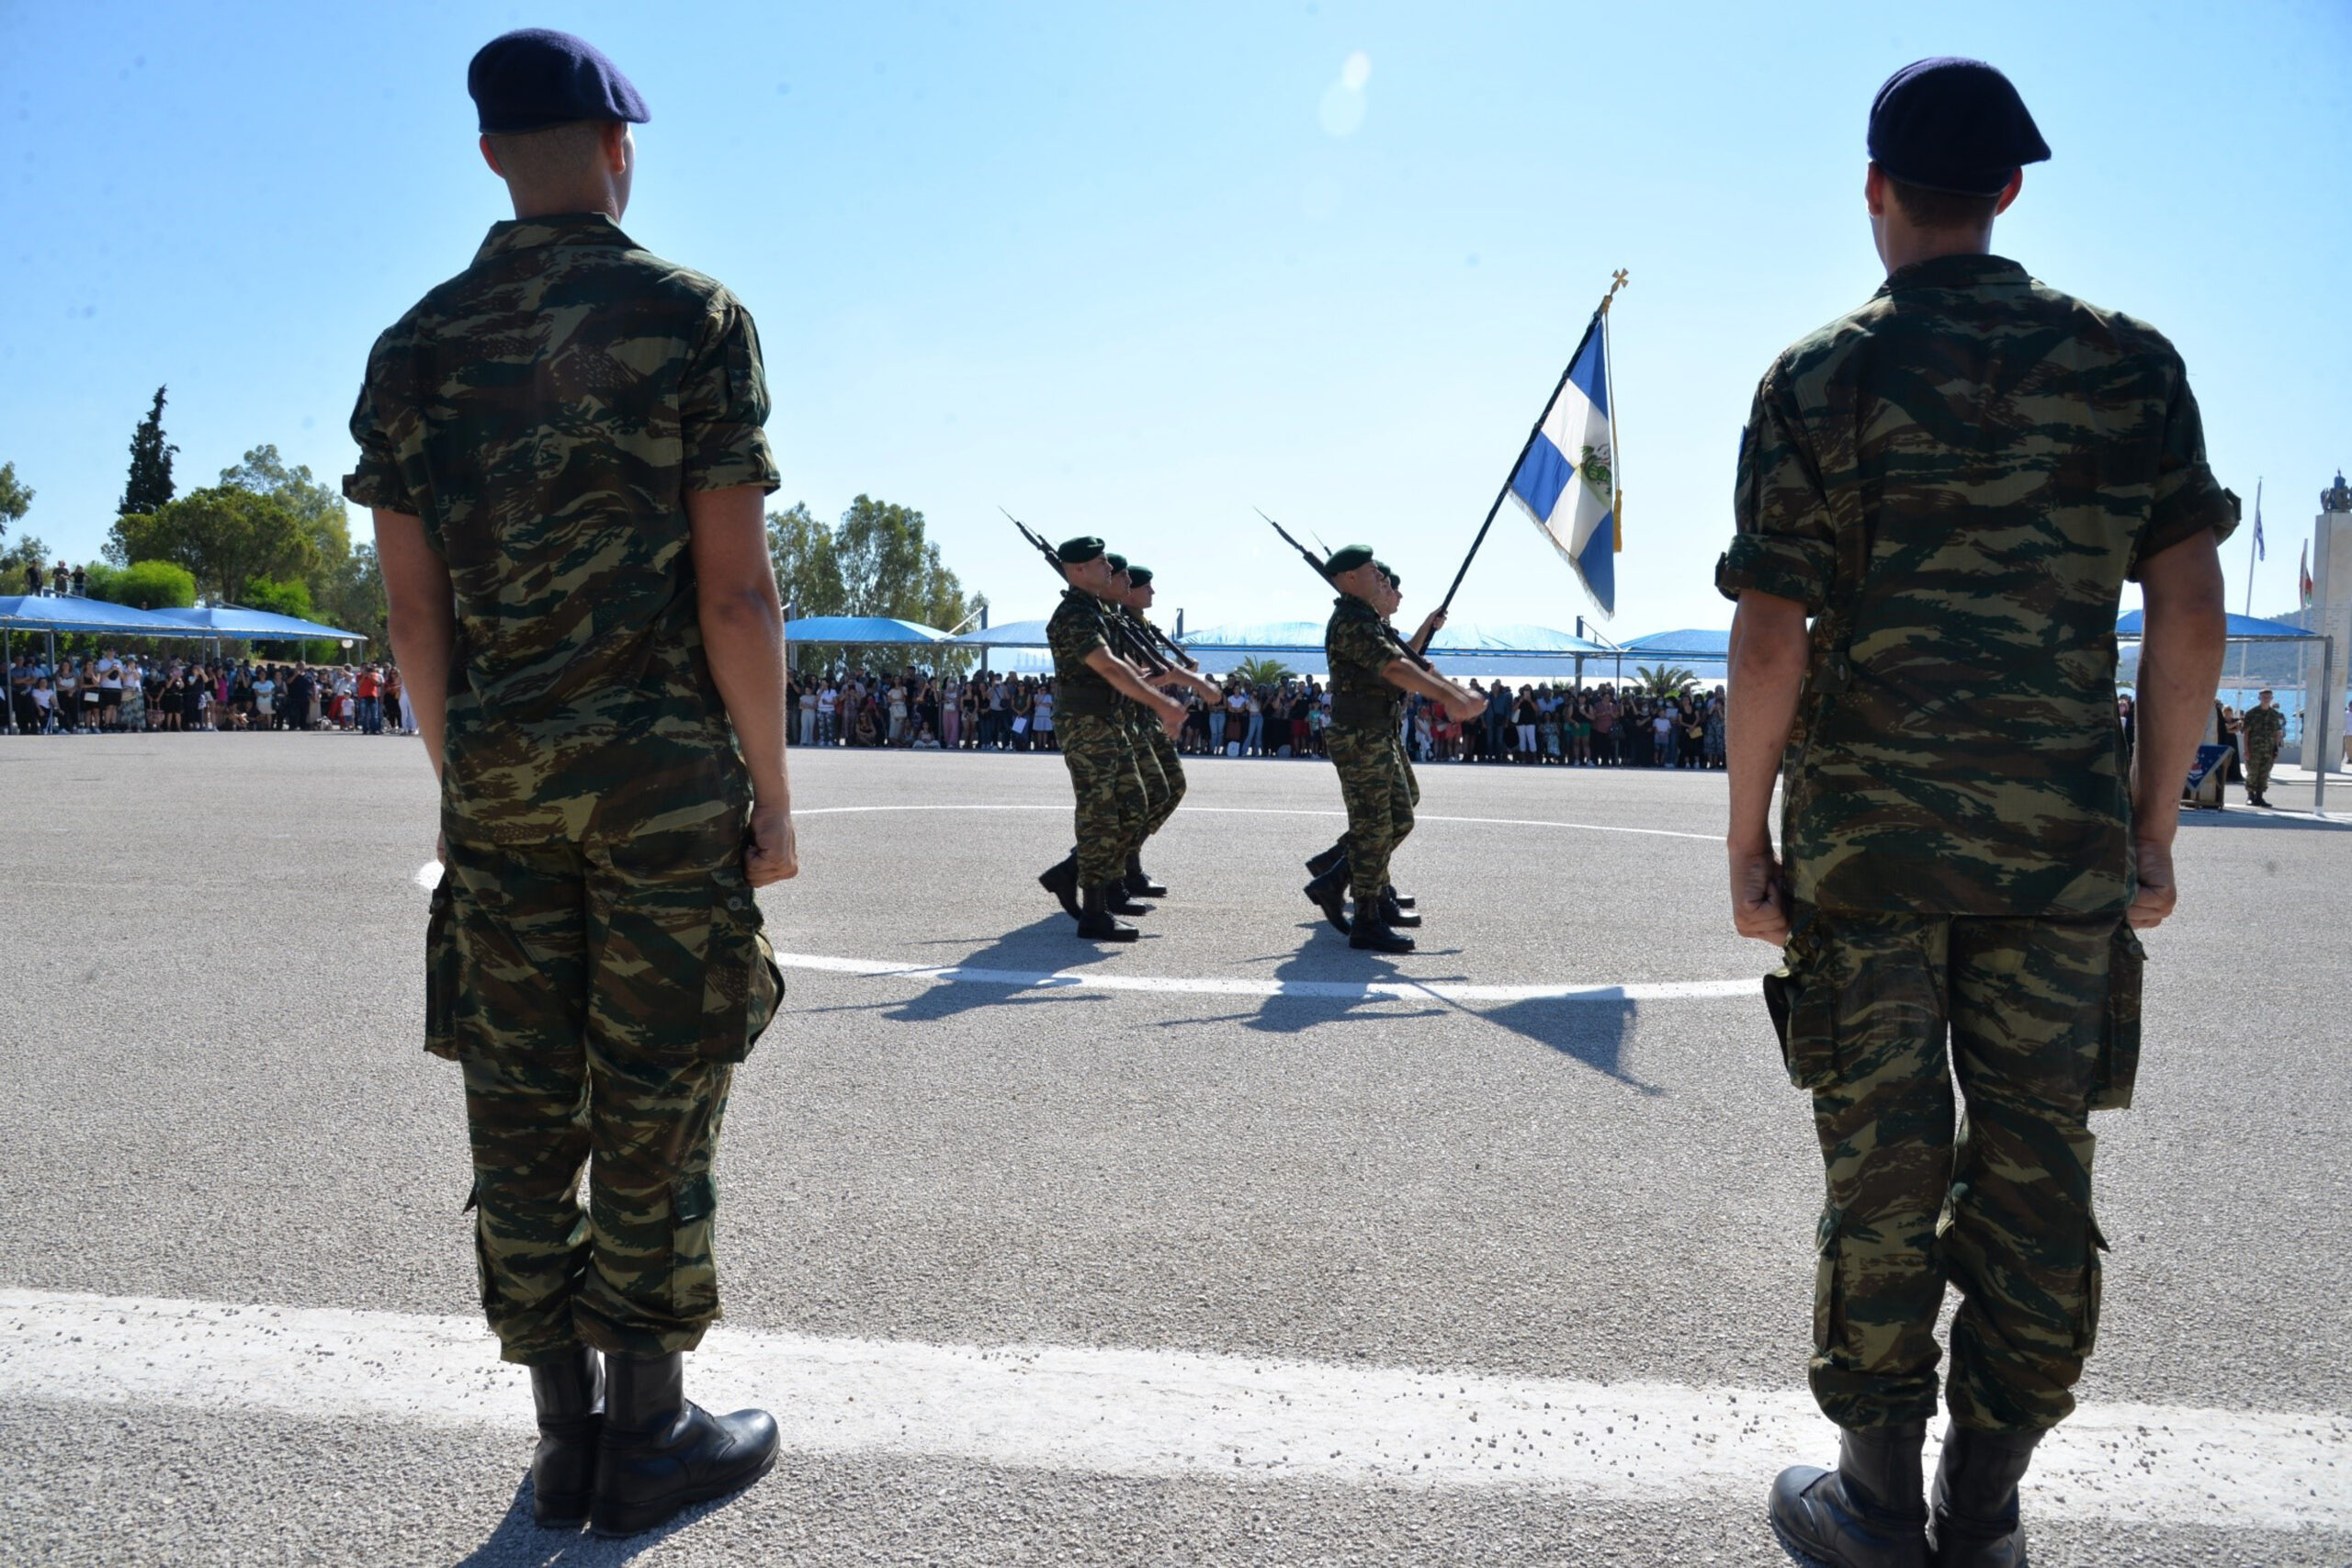 Στρατιωτική θητεία: Αυτά είναι τα τέσσερα βασικά σημεία του φινλανδικού μοντέλου που υιοθετεί η Ελλάδα – Πώς θα εφαρμοστεί